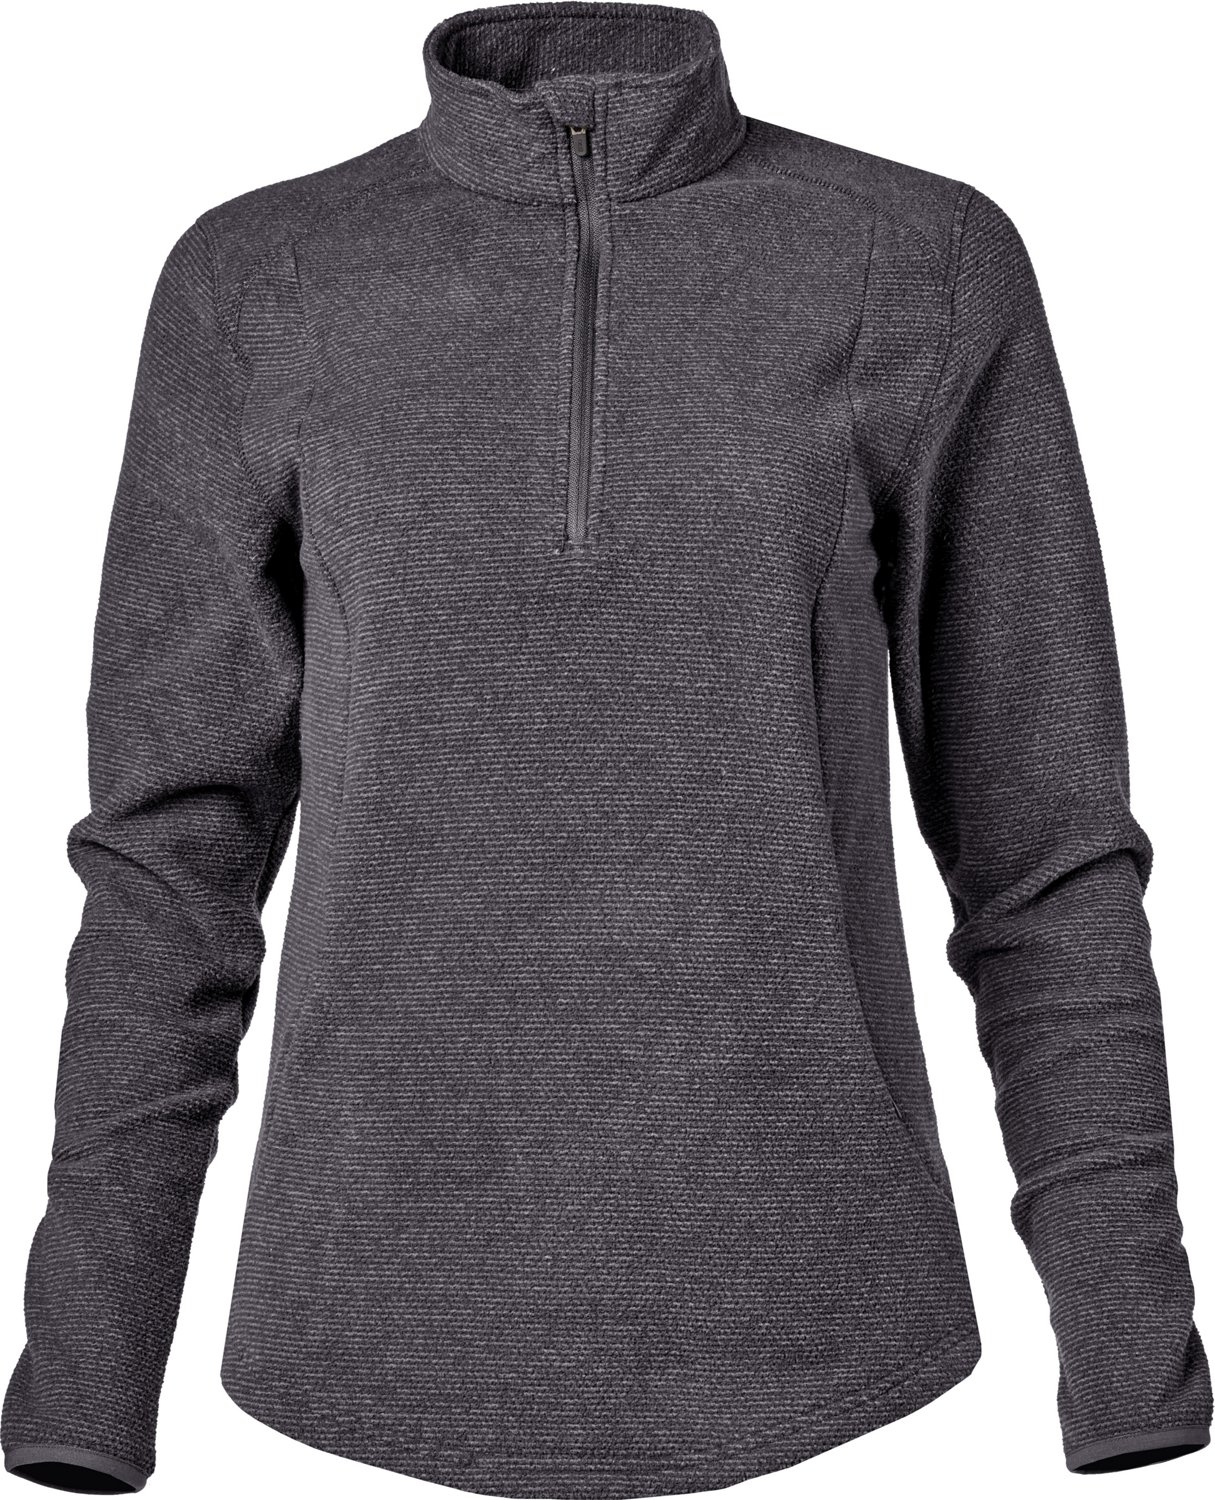 MAGCOMSEN Women's 1/4 Zip Fleece Pullover Quarter Sweatshirt Warm Mid Layer  Jacket Top